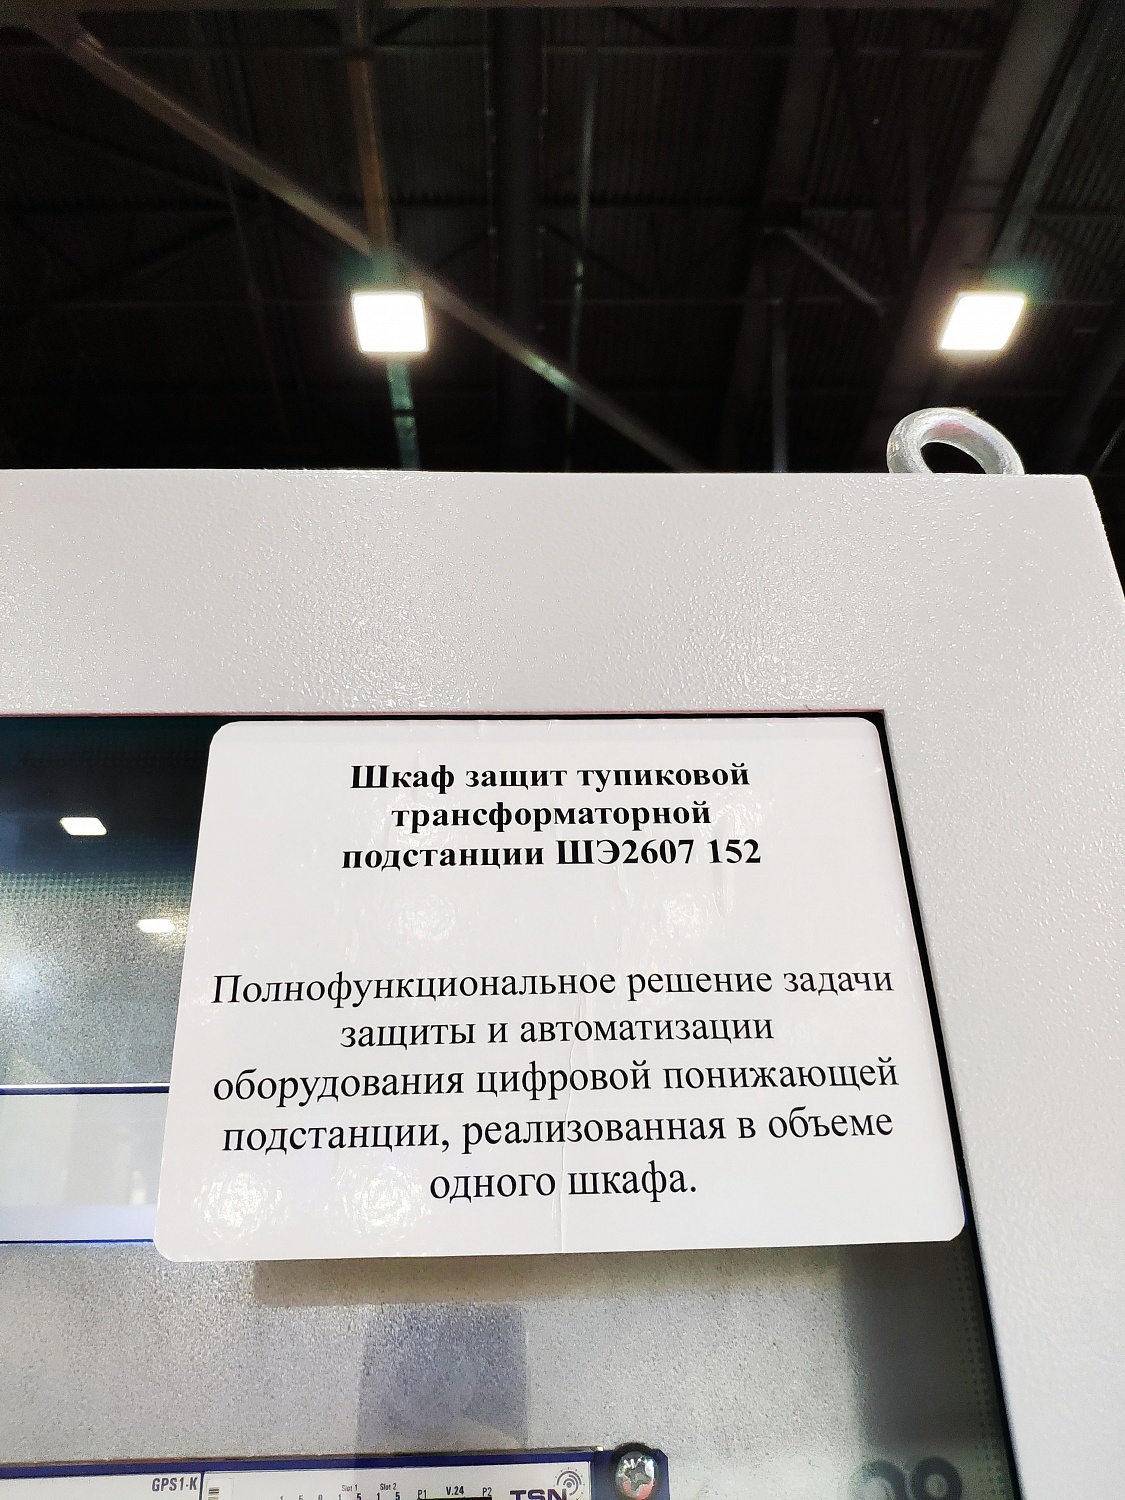 Выставка «Энергетика и электротехника» в Санкт-Петербурге